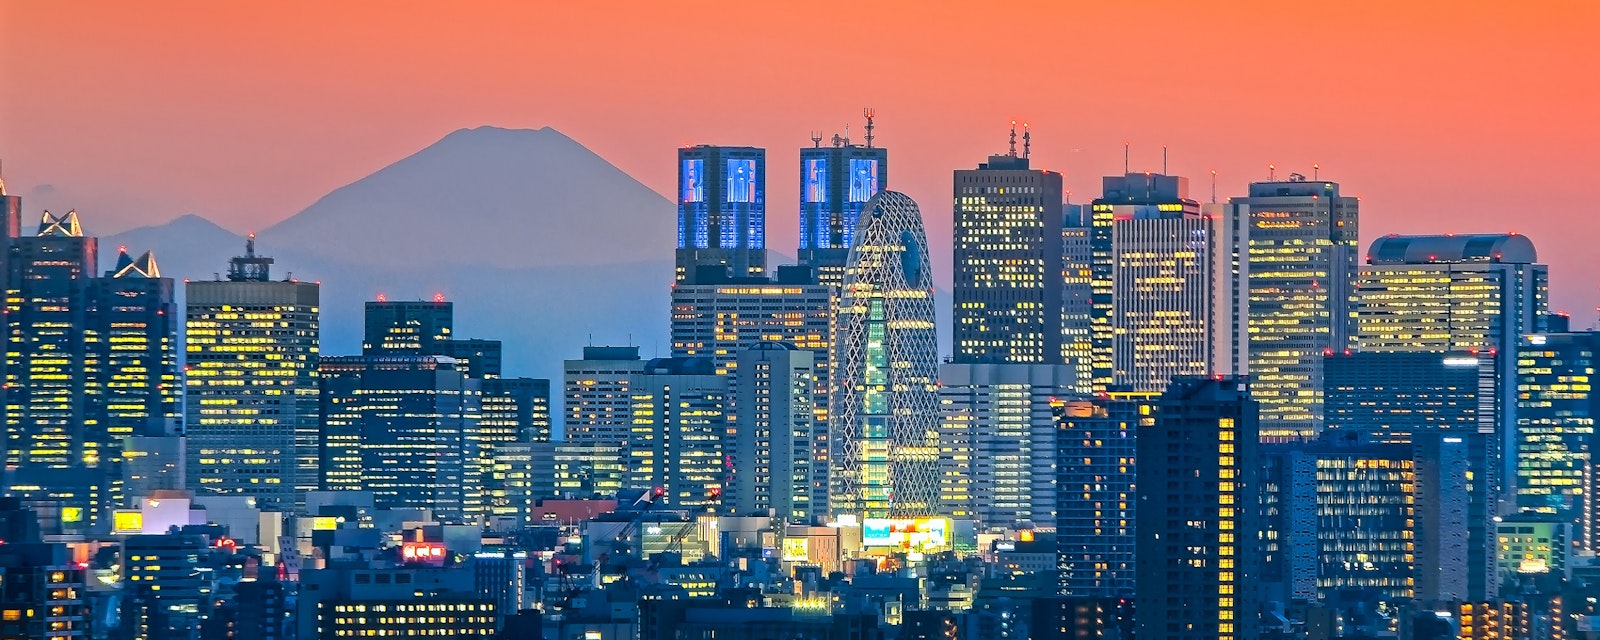 Tokyo,,Shinjuku,Building,Cityscape,And,Mt.,Fuji,At,Behind.